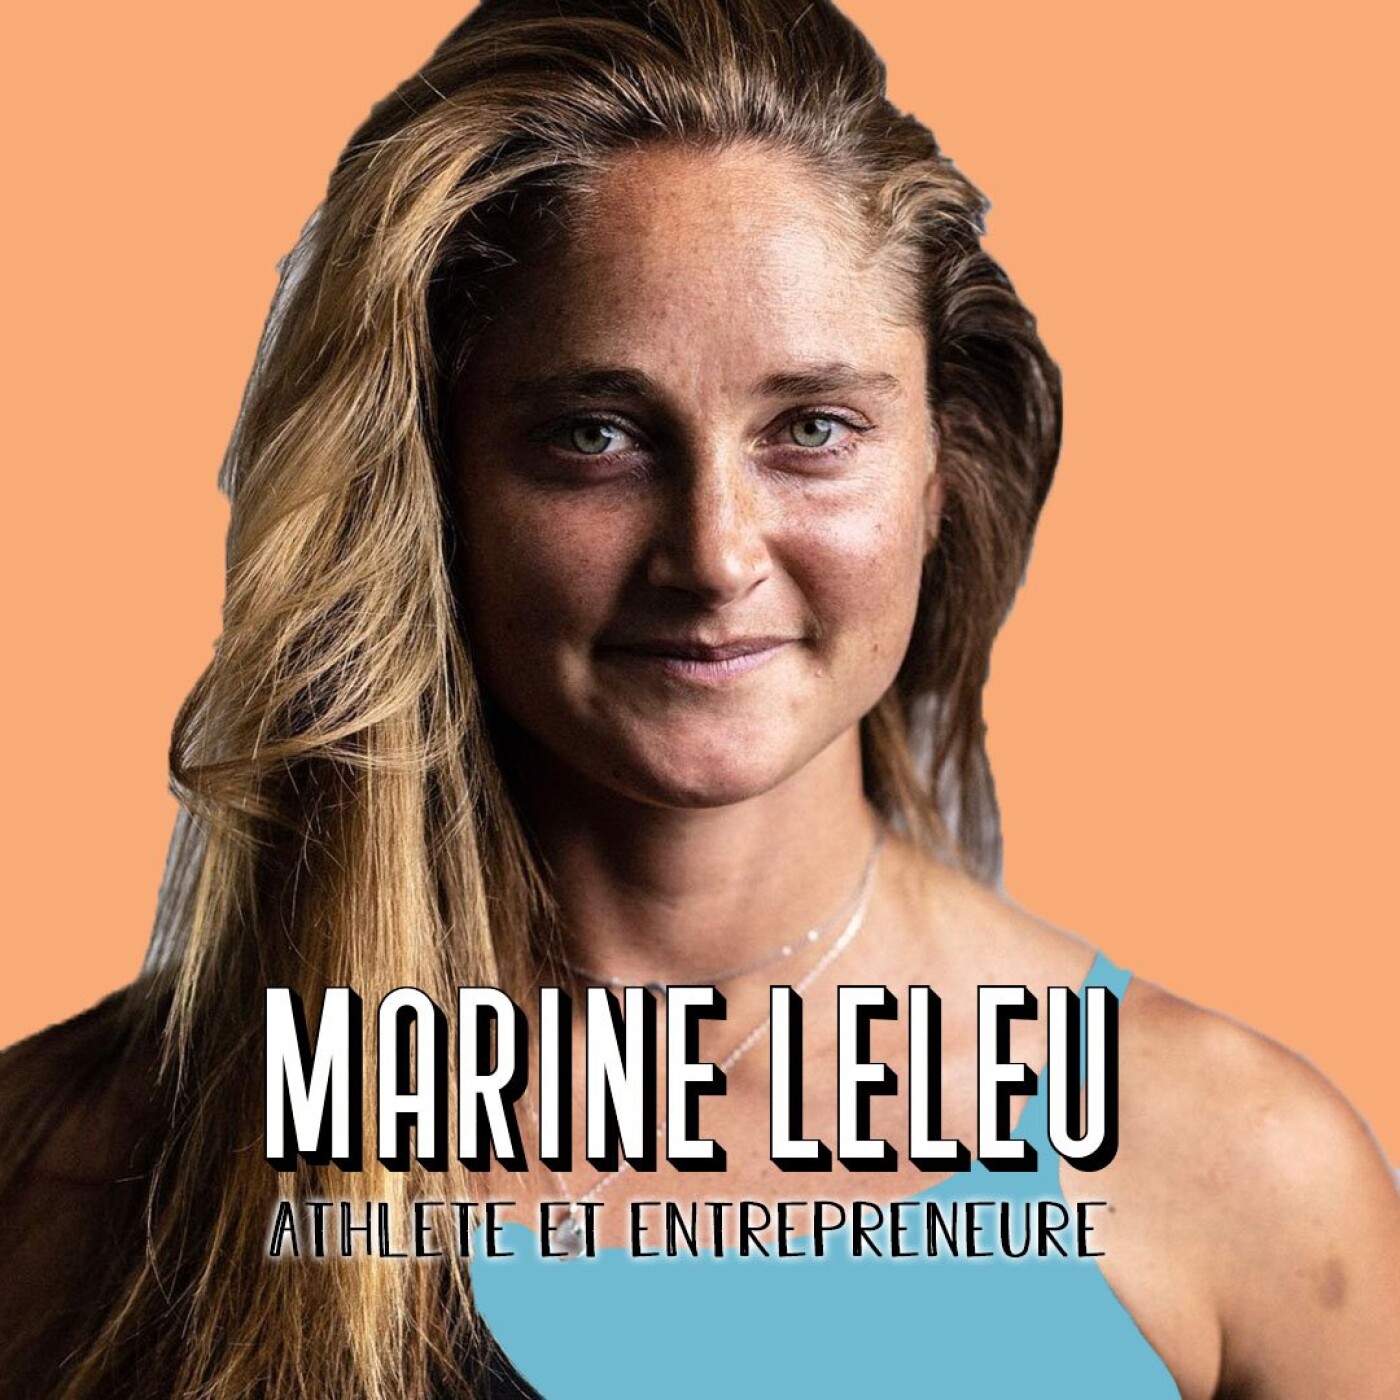 Marine Leleu, Athlète, Coach Sportive et Entrepreneure – Se dépasser, c’est se sentir vivre